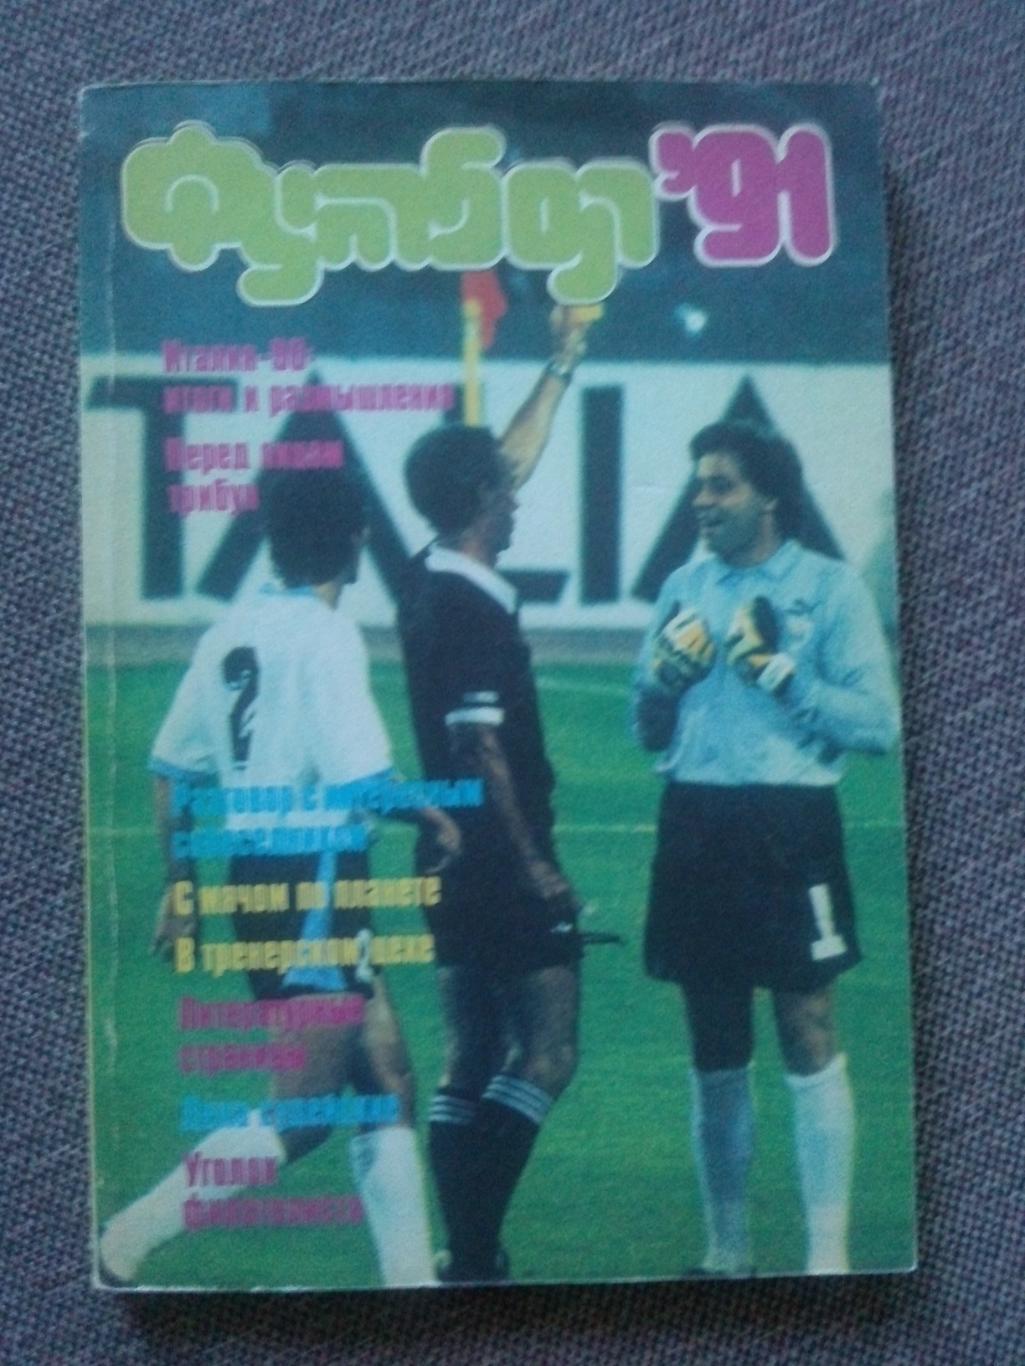 Альманах Футбол - 91 1991 г. Справочник (Спорт)ФиС(чемпионат Мира 1990)